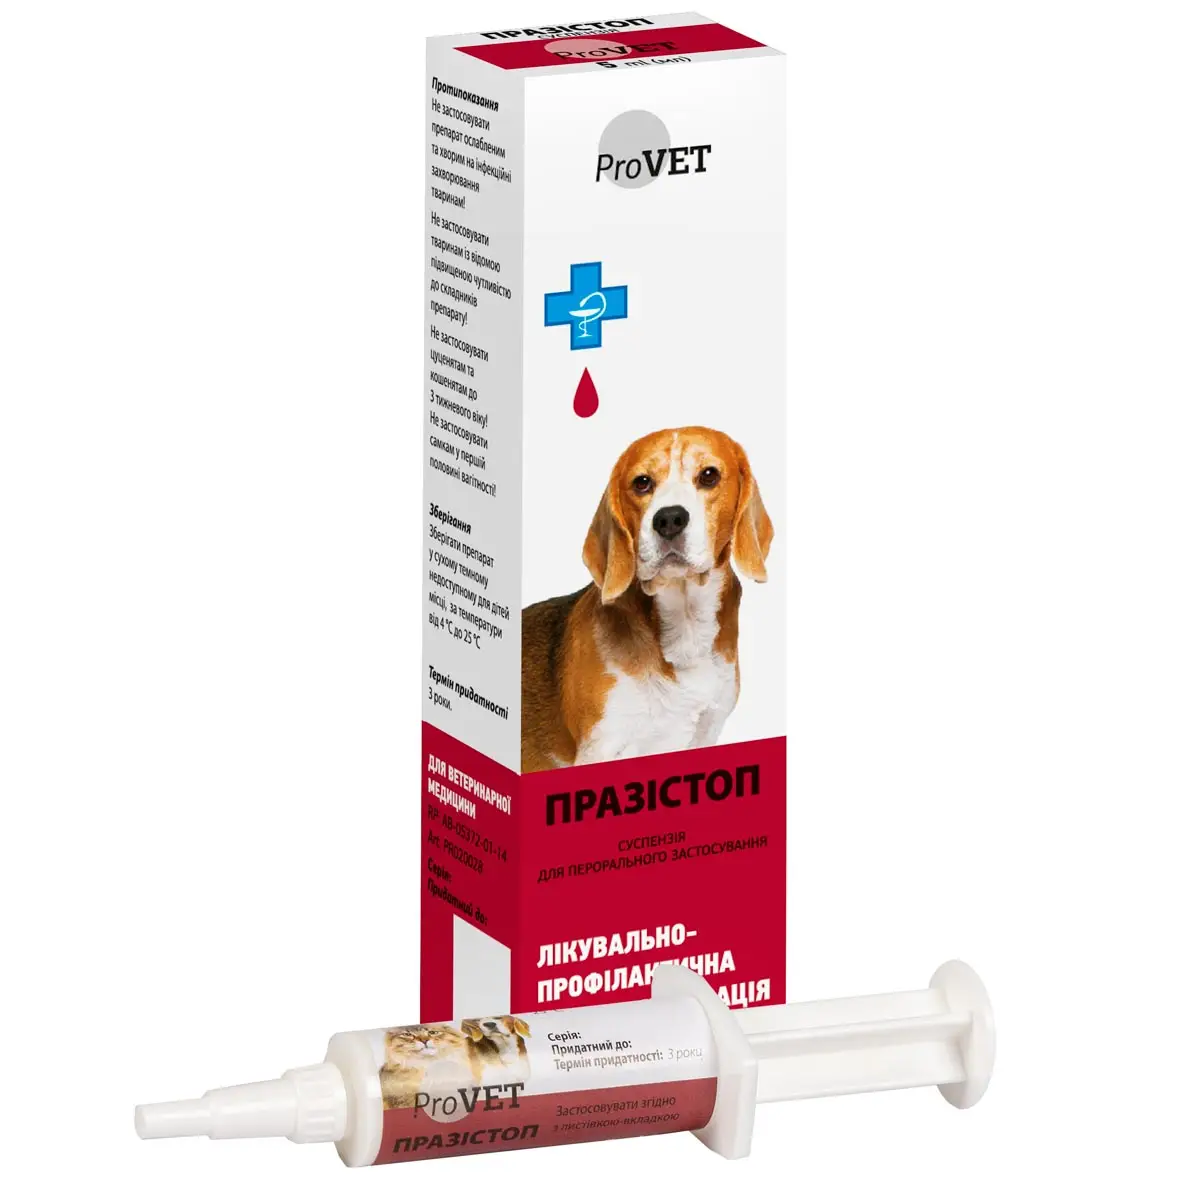 Суспензія для котів та собак ProVET Празистоп, для лікування та профілактики гельмінтозів, 5 мл (PR020028) - фото 1